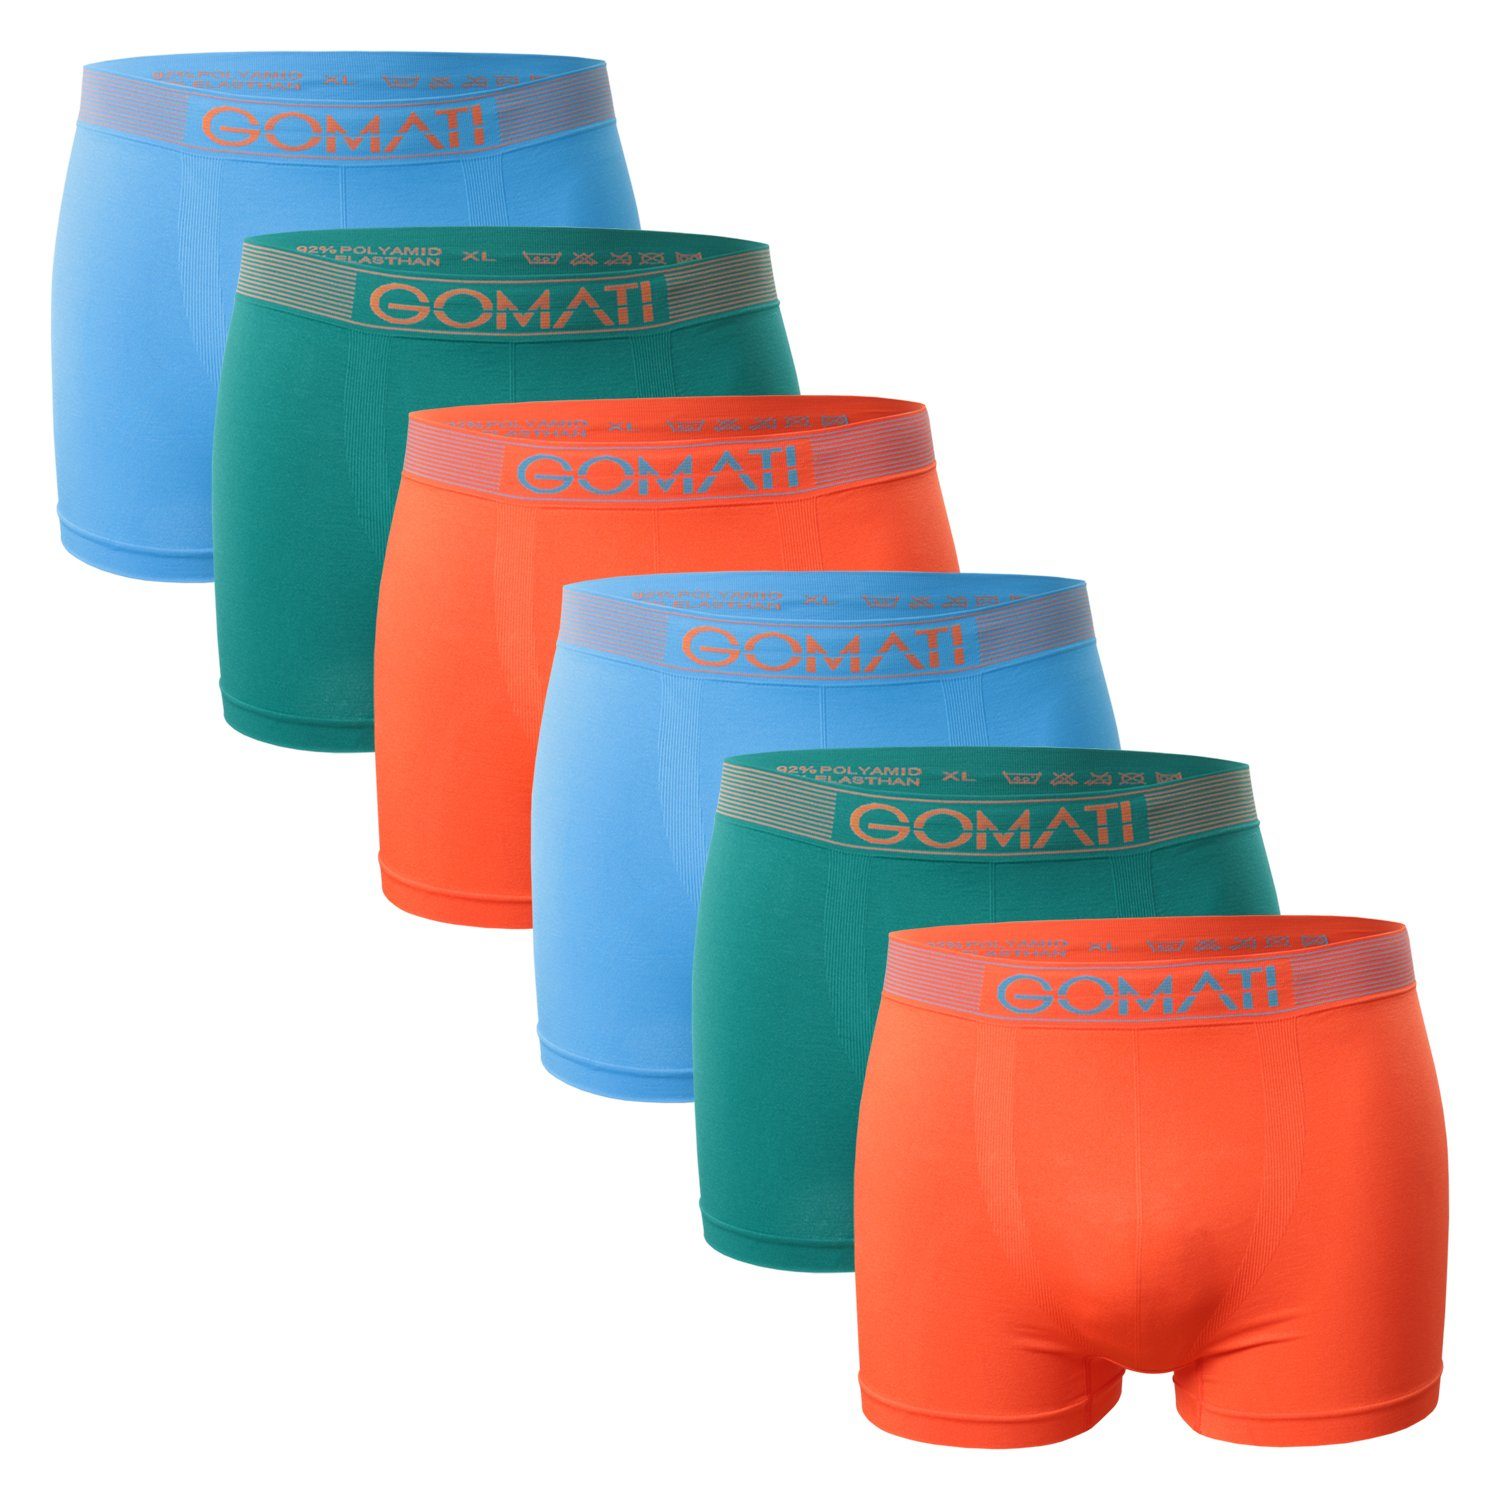 Herren (6er Azure Petrol Gomati Orange Microfaser-Elasthan Boxershorts Seamless Pants / Pack) / Boxershorts